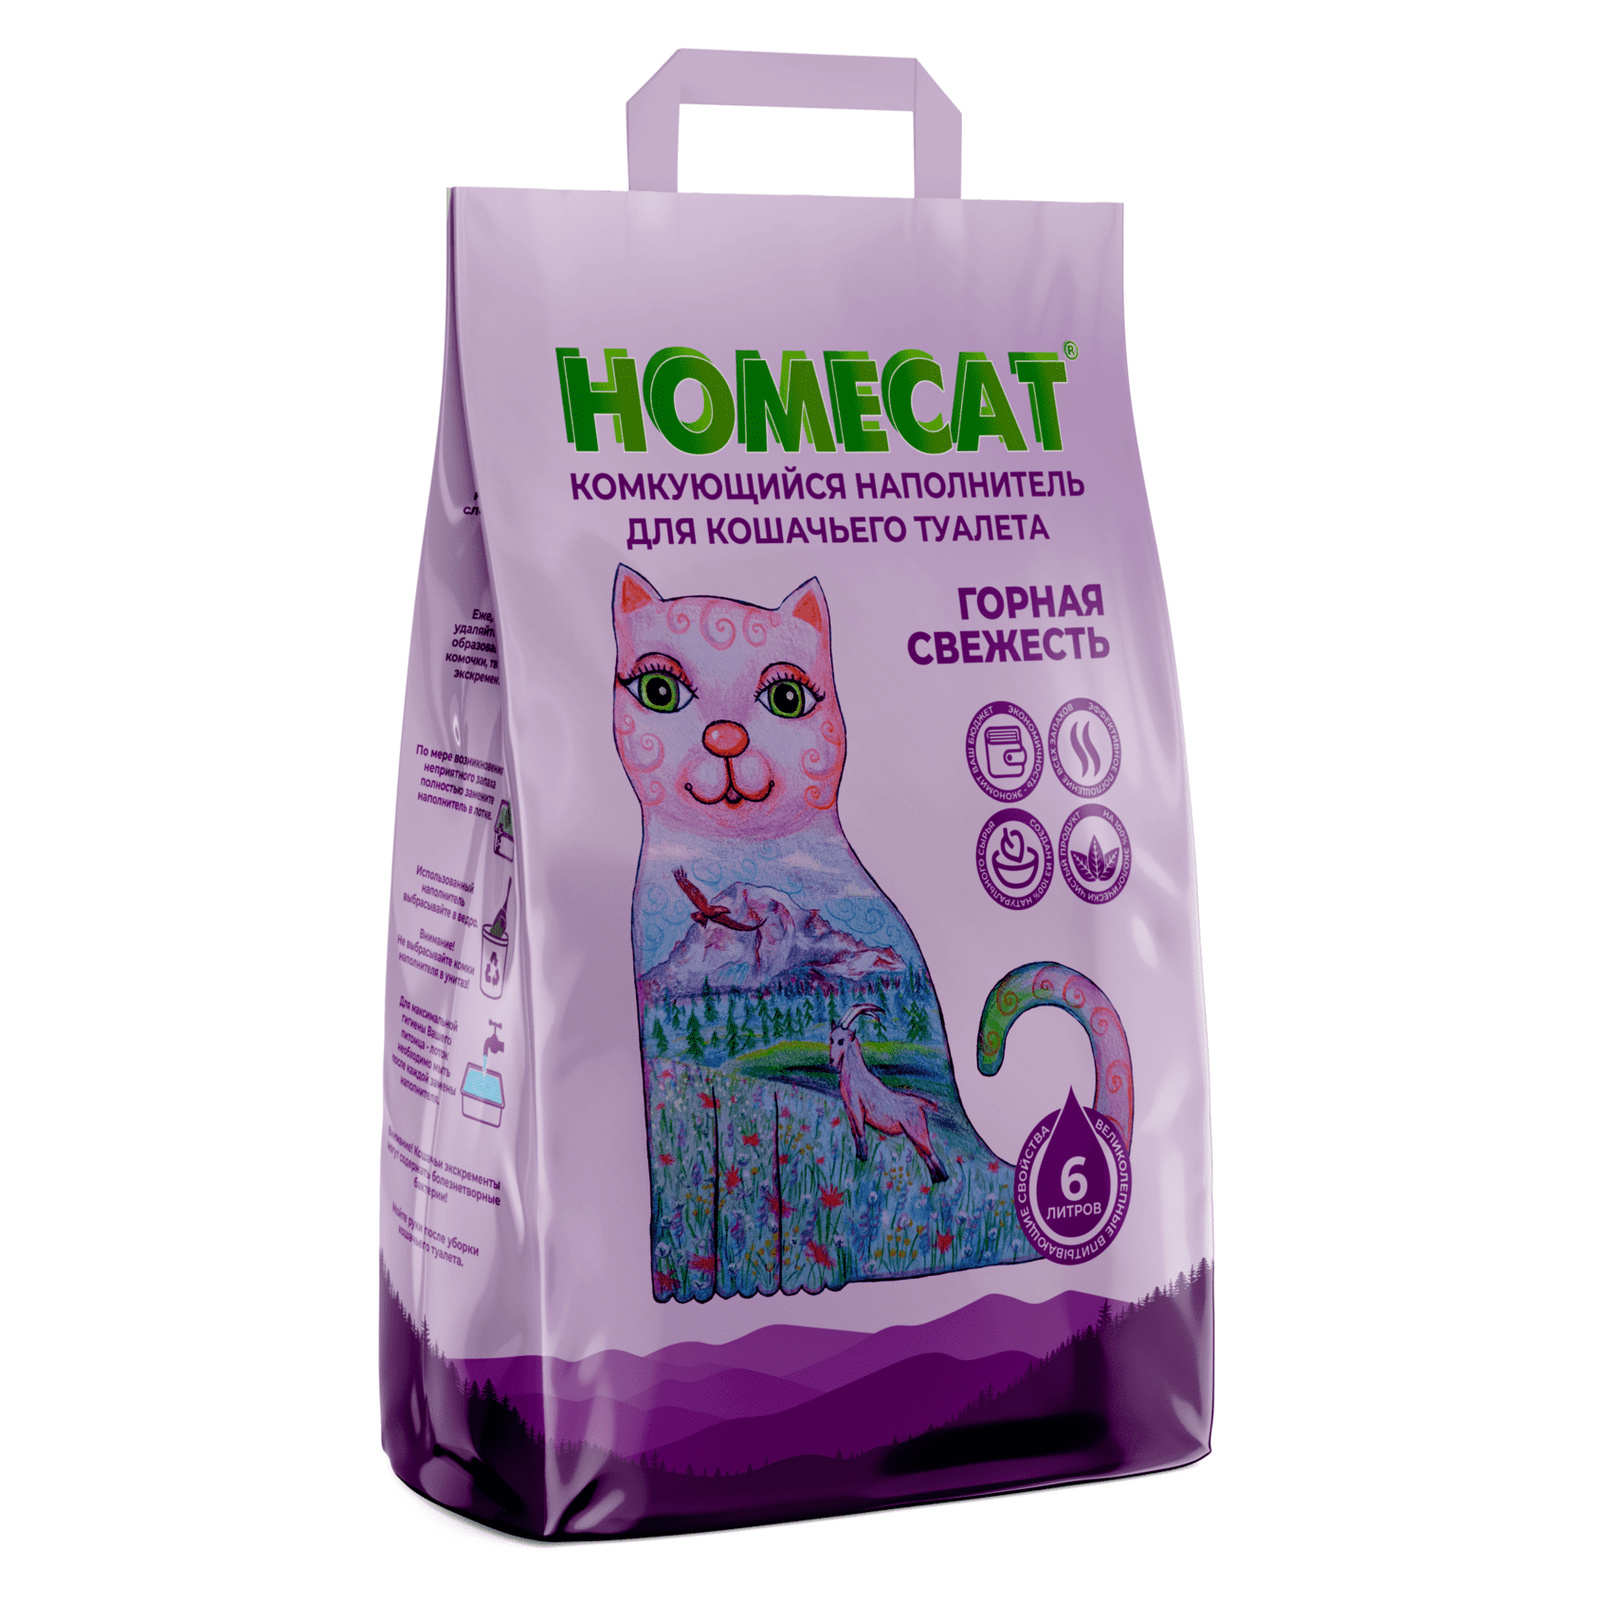 Homecat наполнитель Homecat наполнитель комкующийся наполнитель (10 кг) homecat наполнитель homecat наполнитель комкующийся наполнитель 10 кг